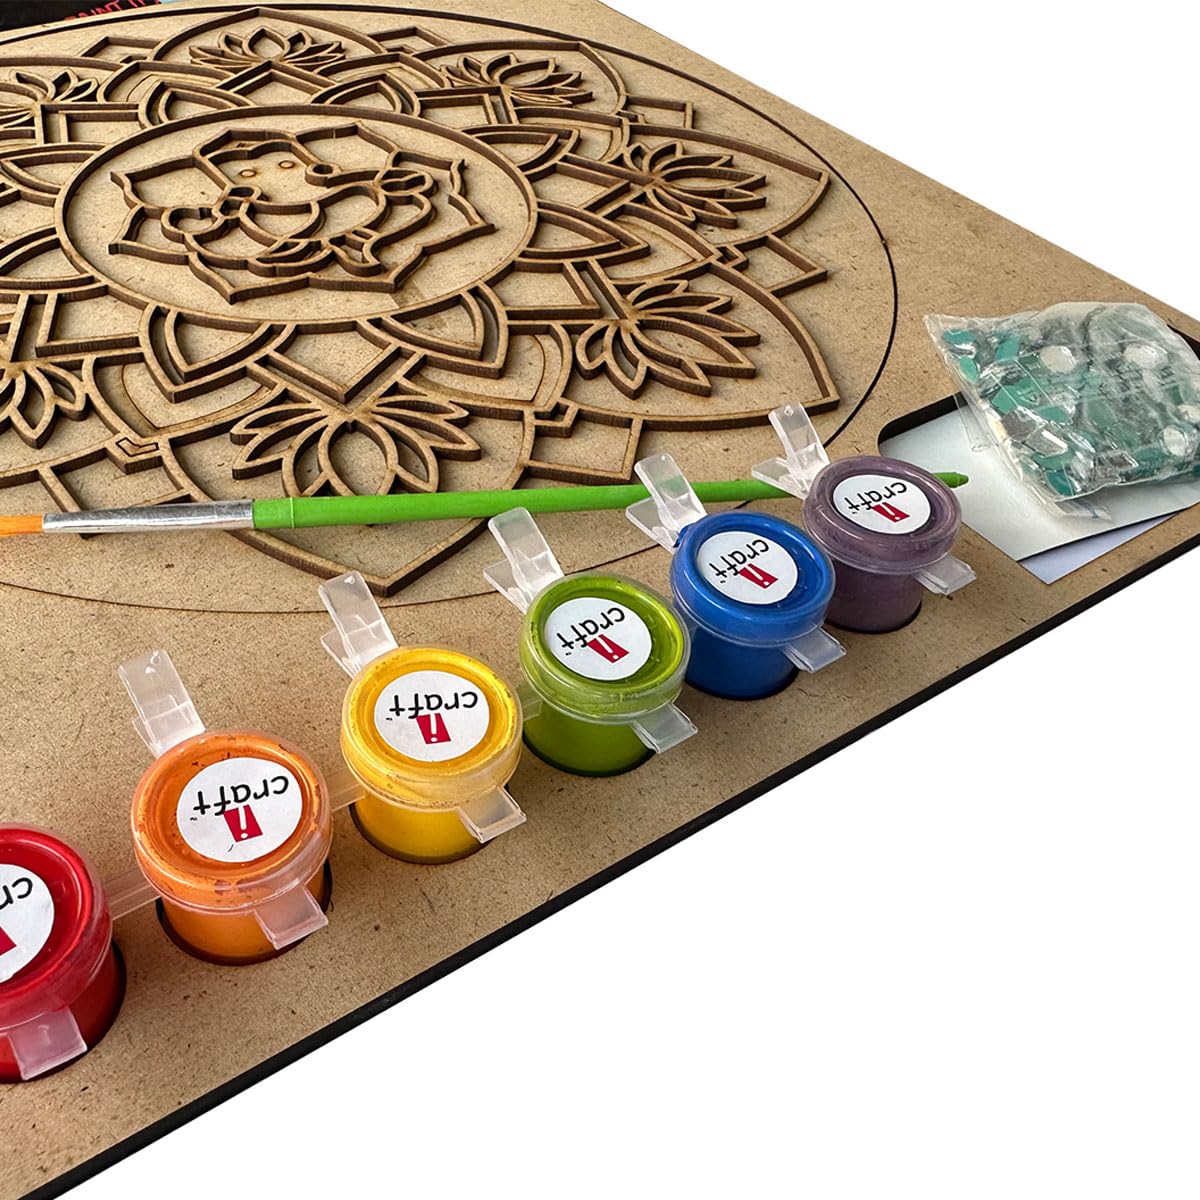 iCraft DIY Mandala Art Kit - Ganesha Design - 10x10